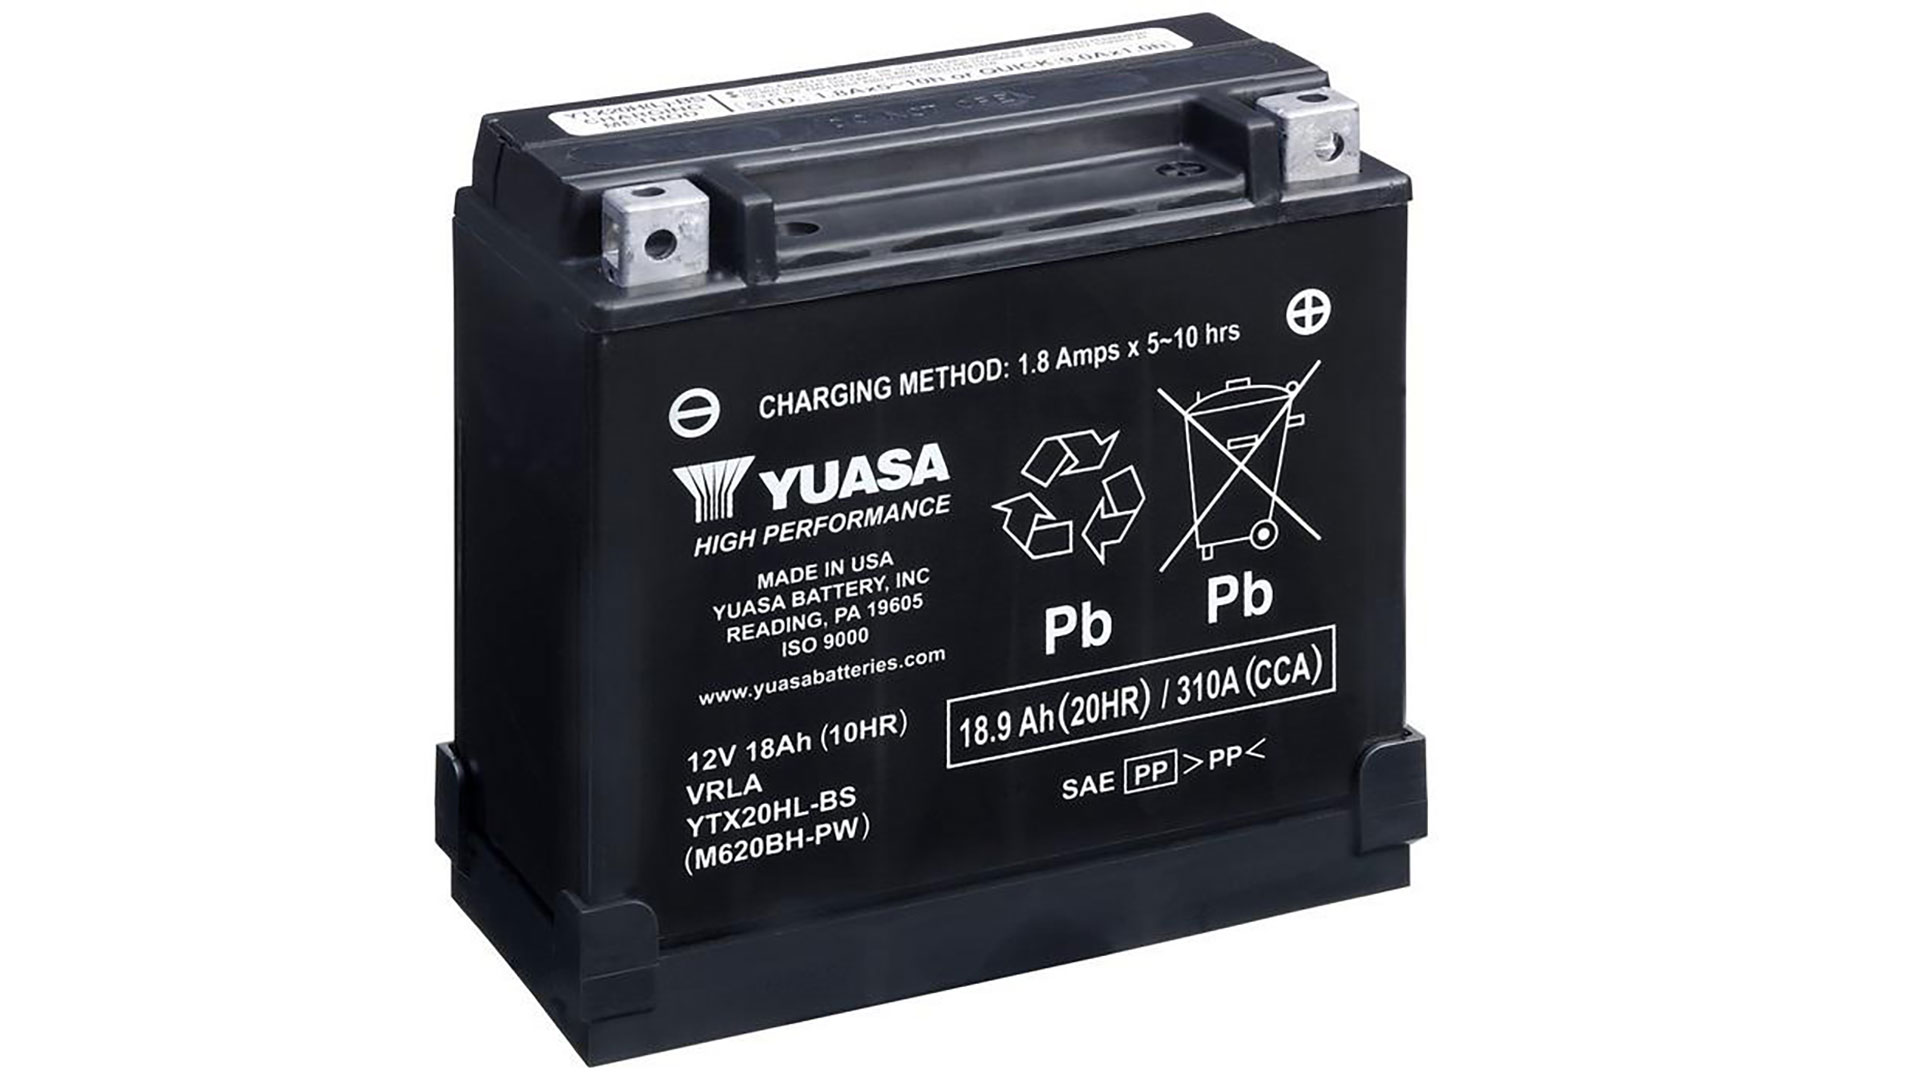  YTX20HL-BS-PW(CP) 12V Yuasa High Performance MF VRLA Battery 